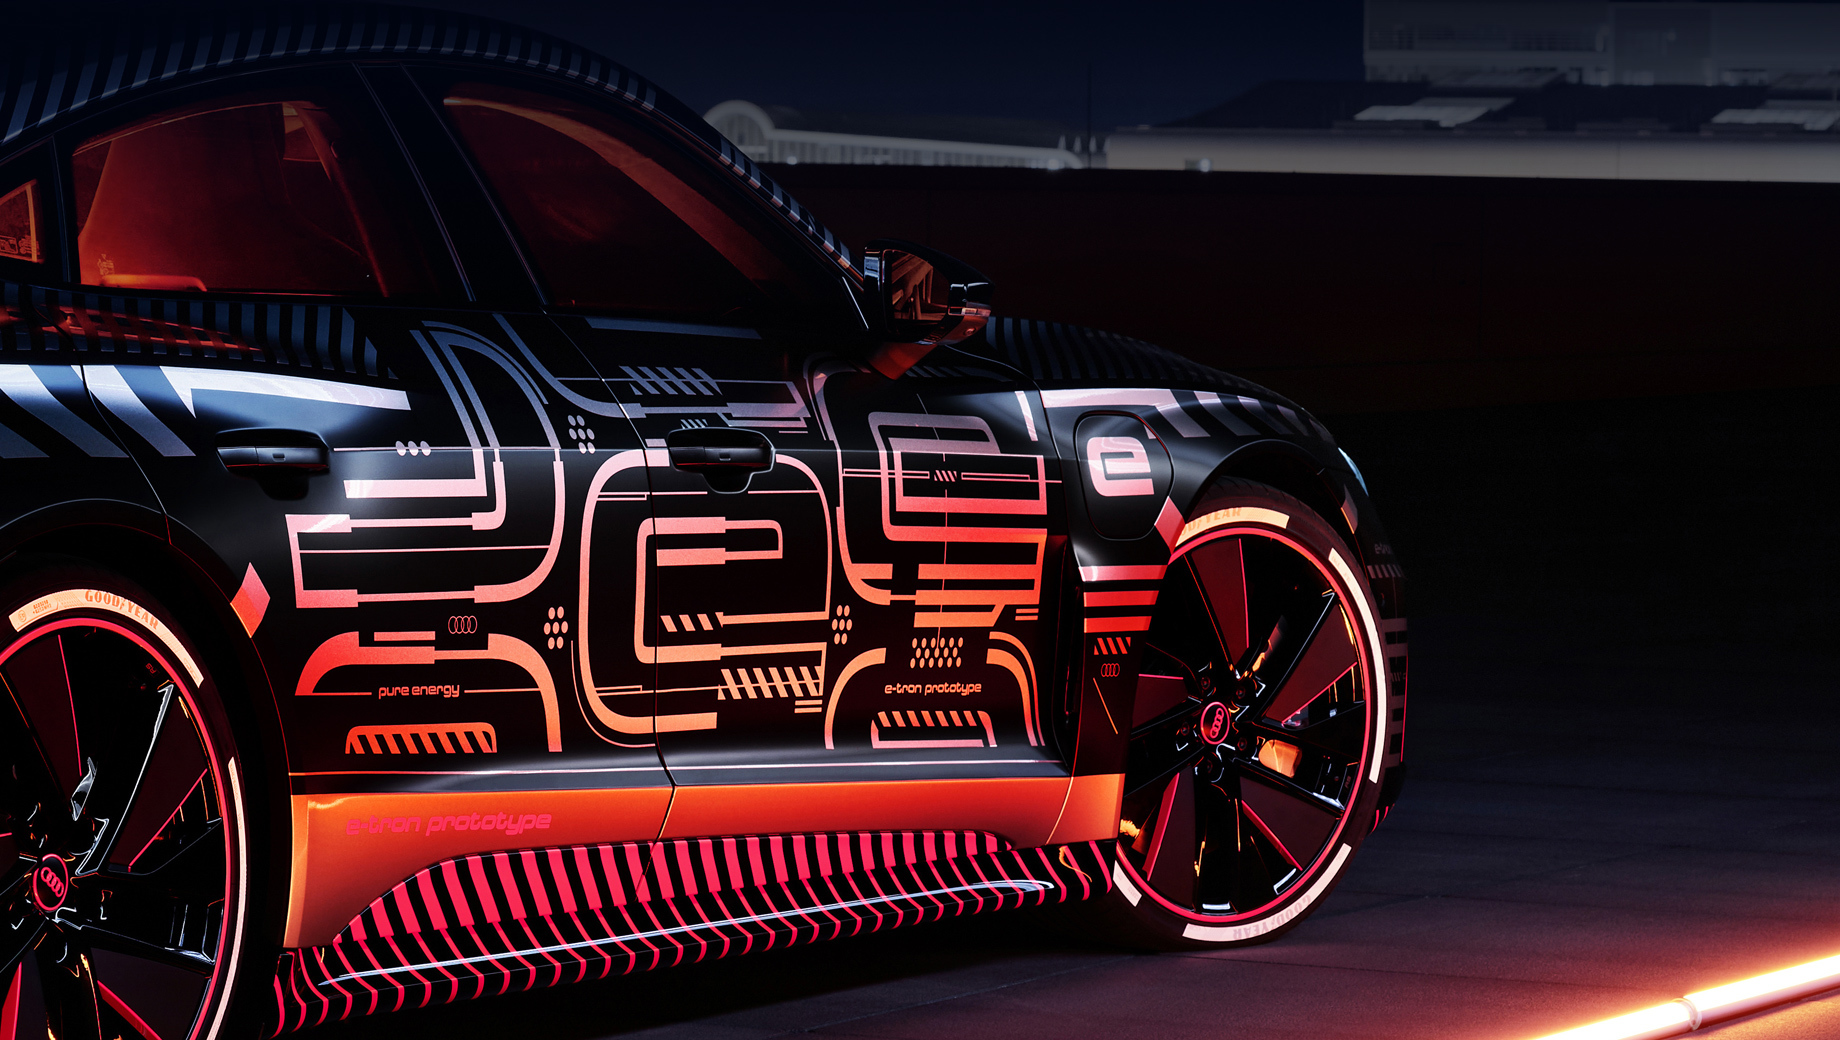 Audi e-tron gt,Audi rs e-tron gt. Электрокар e-tron GT является ближайшим родственником седана Porsche Taycan и использует совместно разработанную Porsche и Audi платформу J1, конечно с некоторыми поправками под конкретную модель.